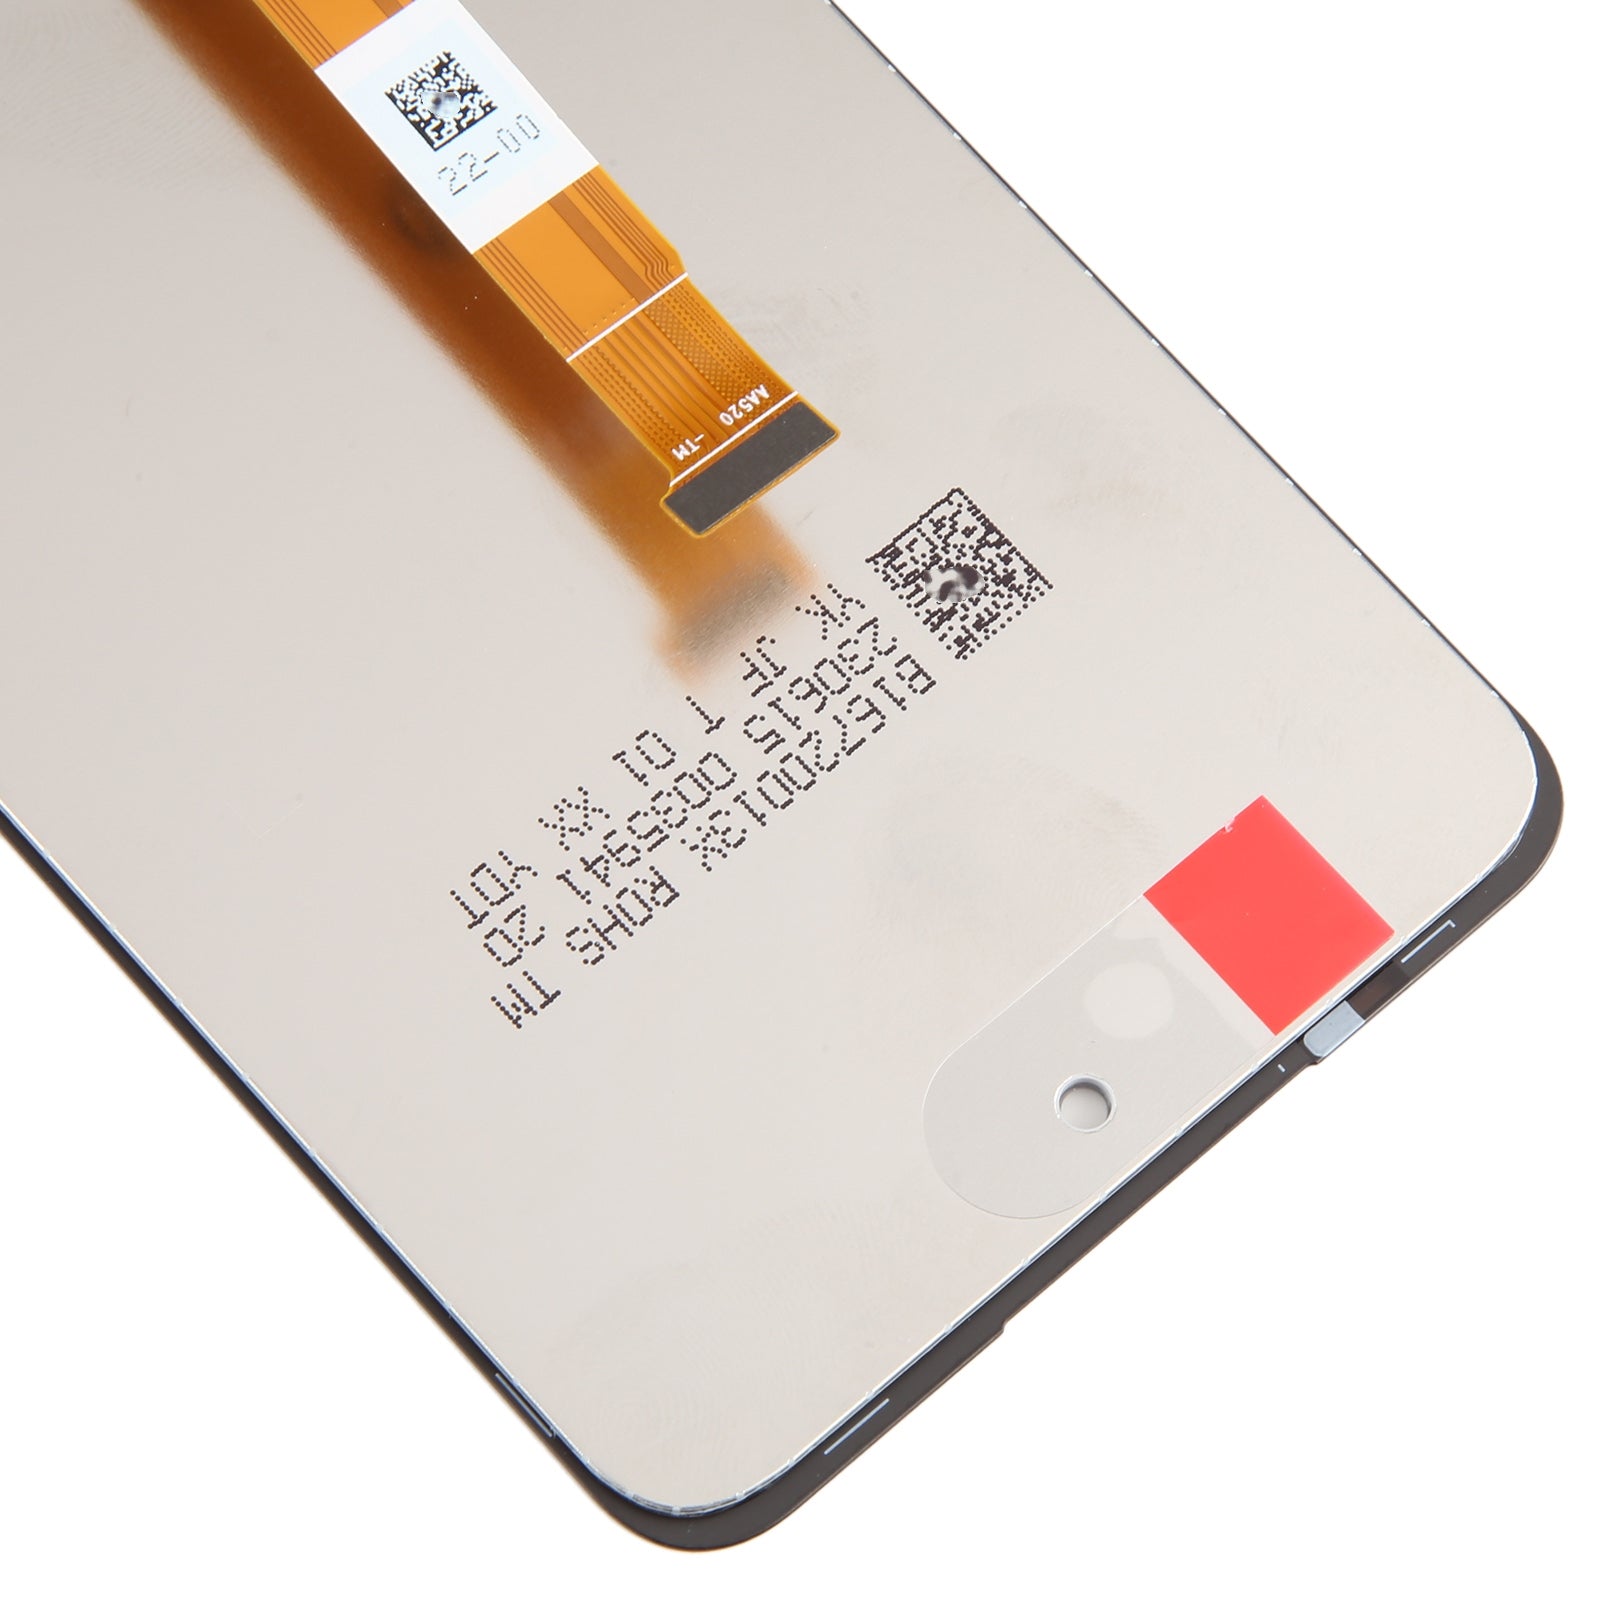 Plein écran + numériseur tactile OnePlus Nord N30